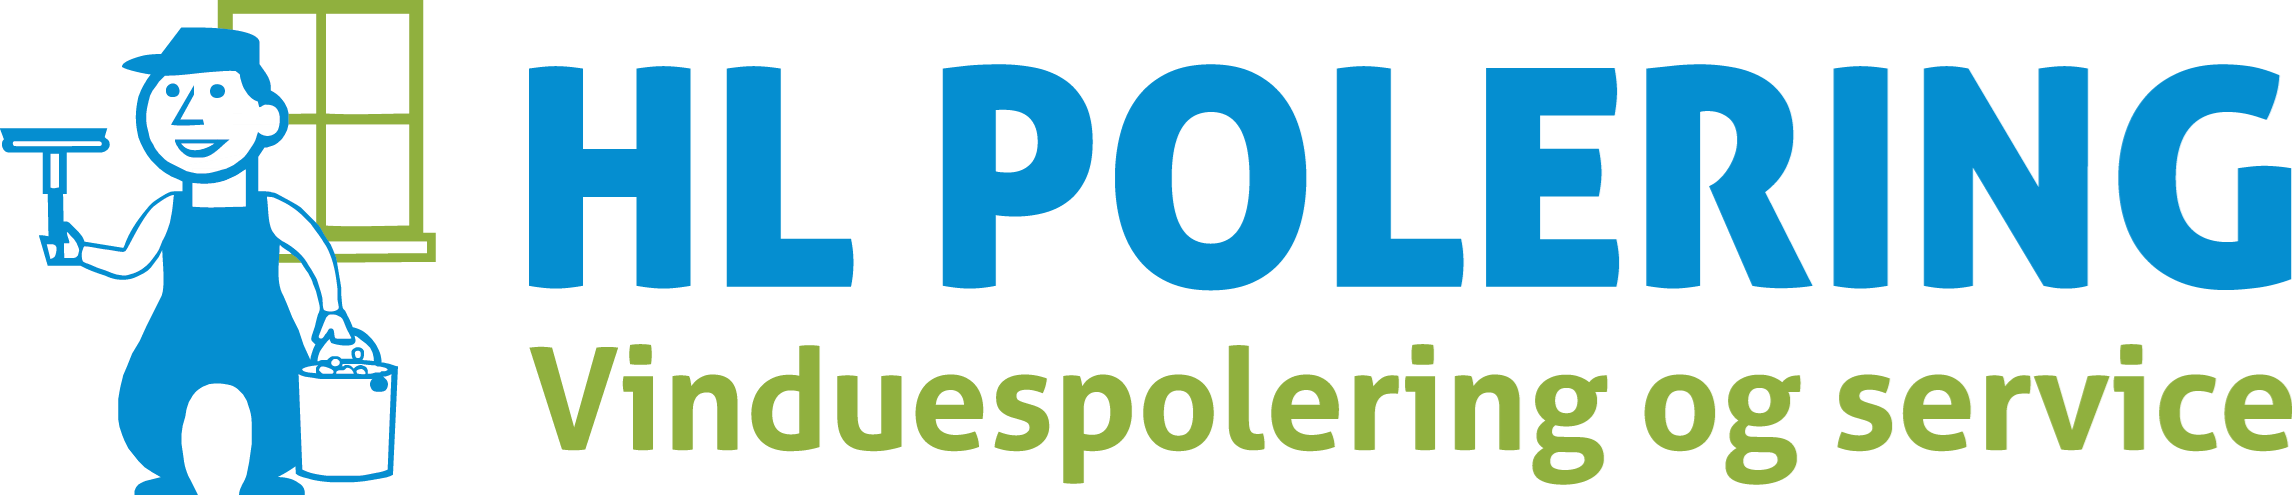 hlpolering_logo